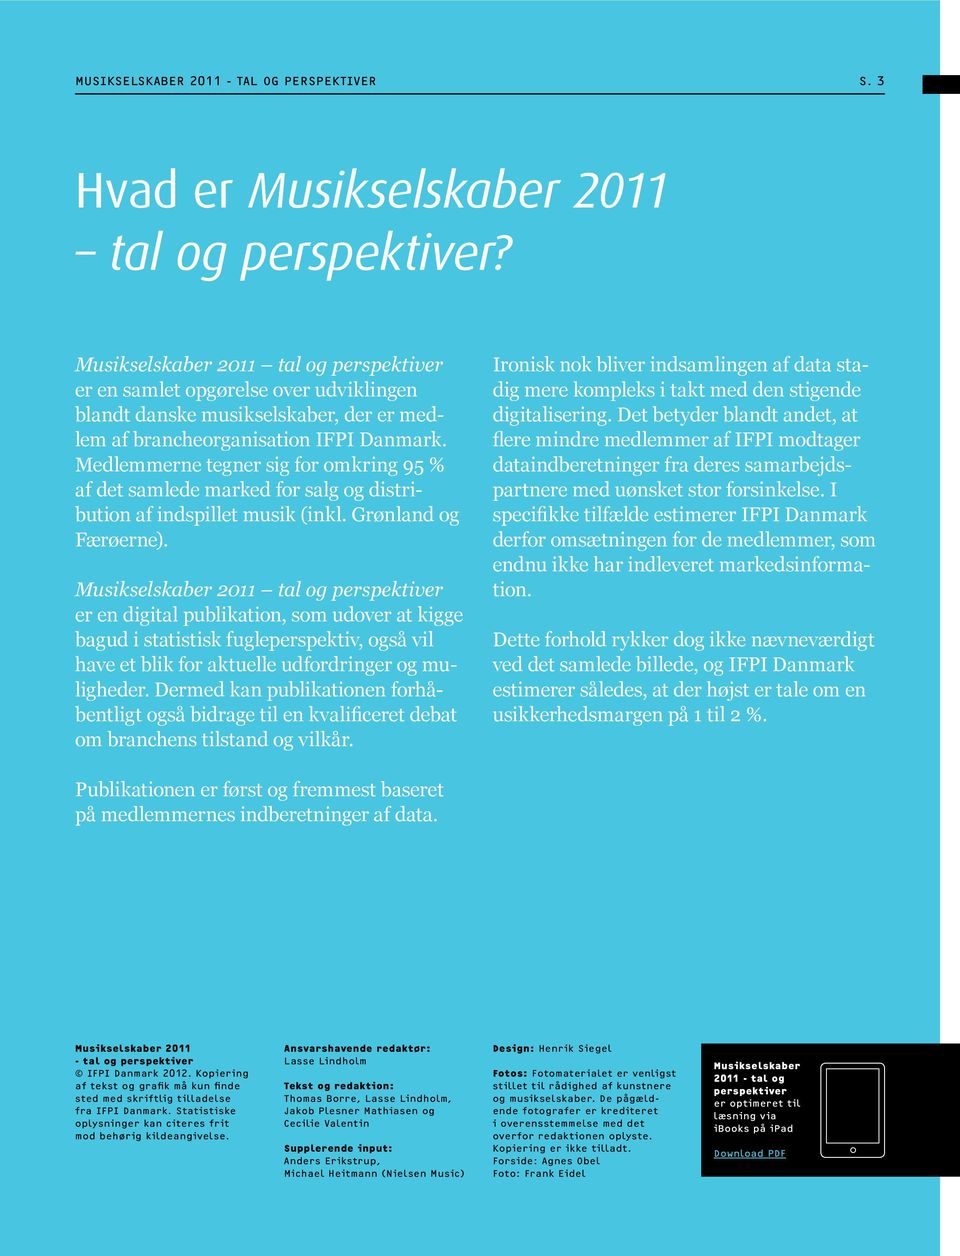 Medlemmerne tegner sig for omkring 95 % af det samlede marked for salg og distribution af indspillet musik (inkl. Grønland og Færøerne).